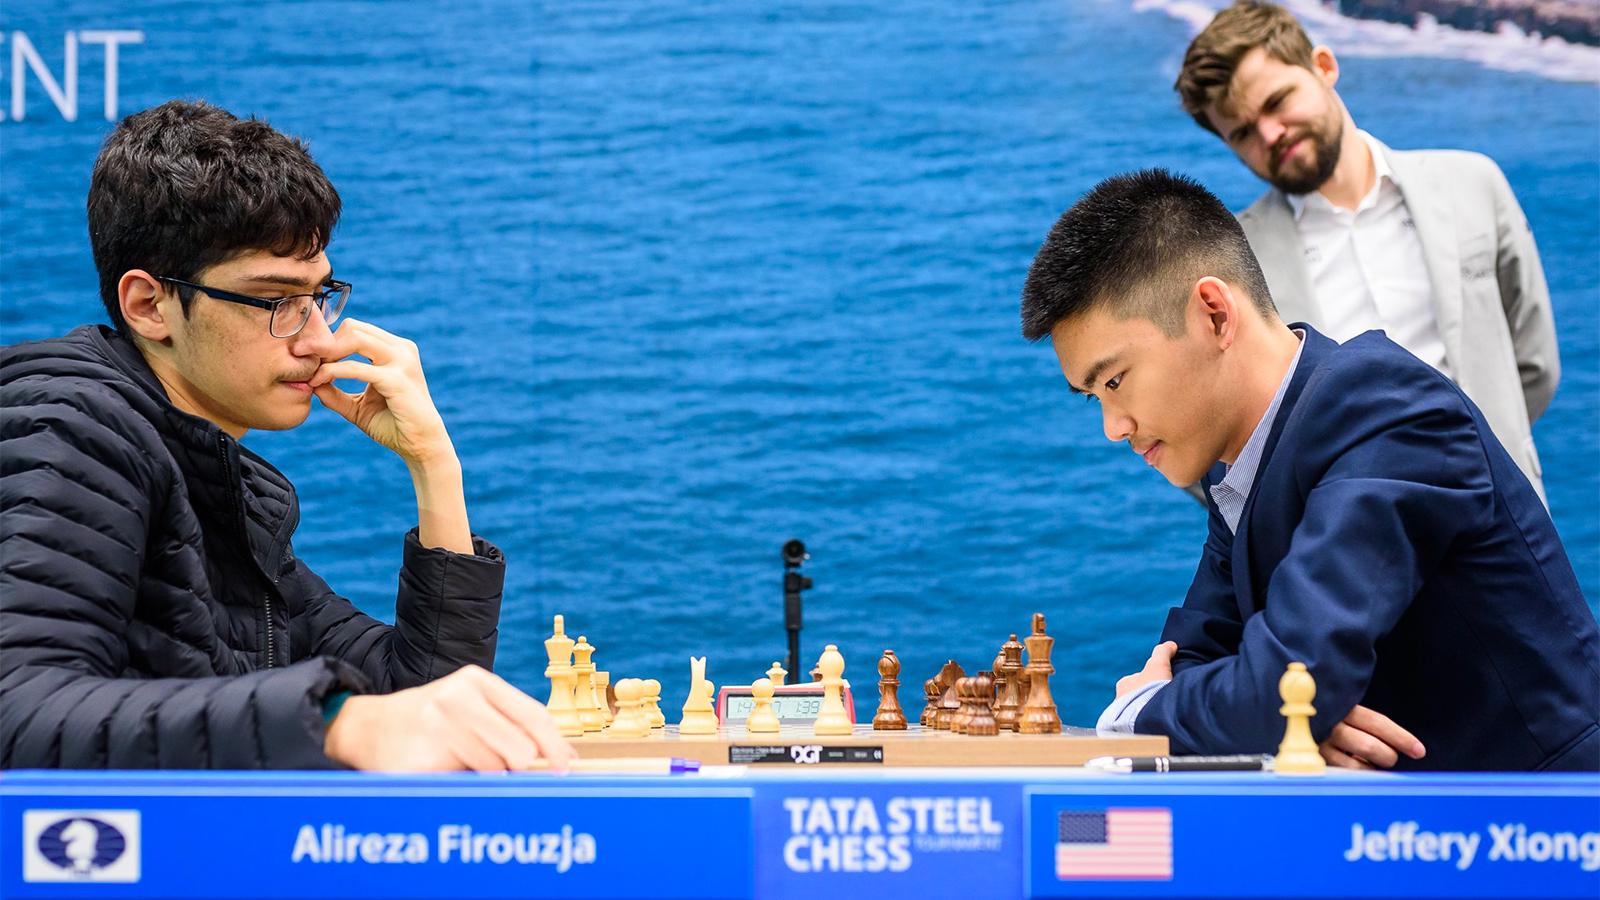 Firouzja Regains Lead At Tata Steel Chess 